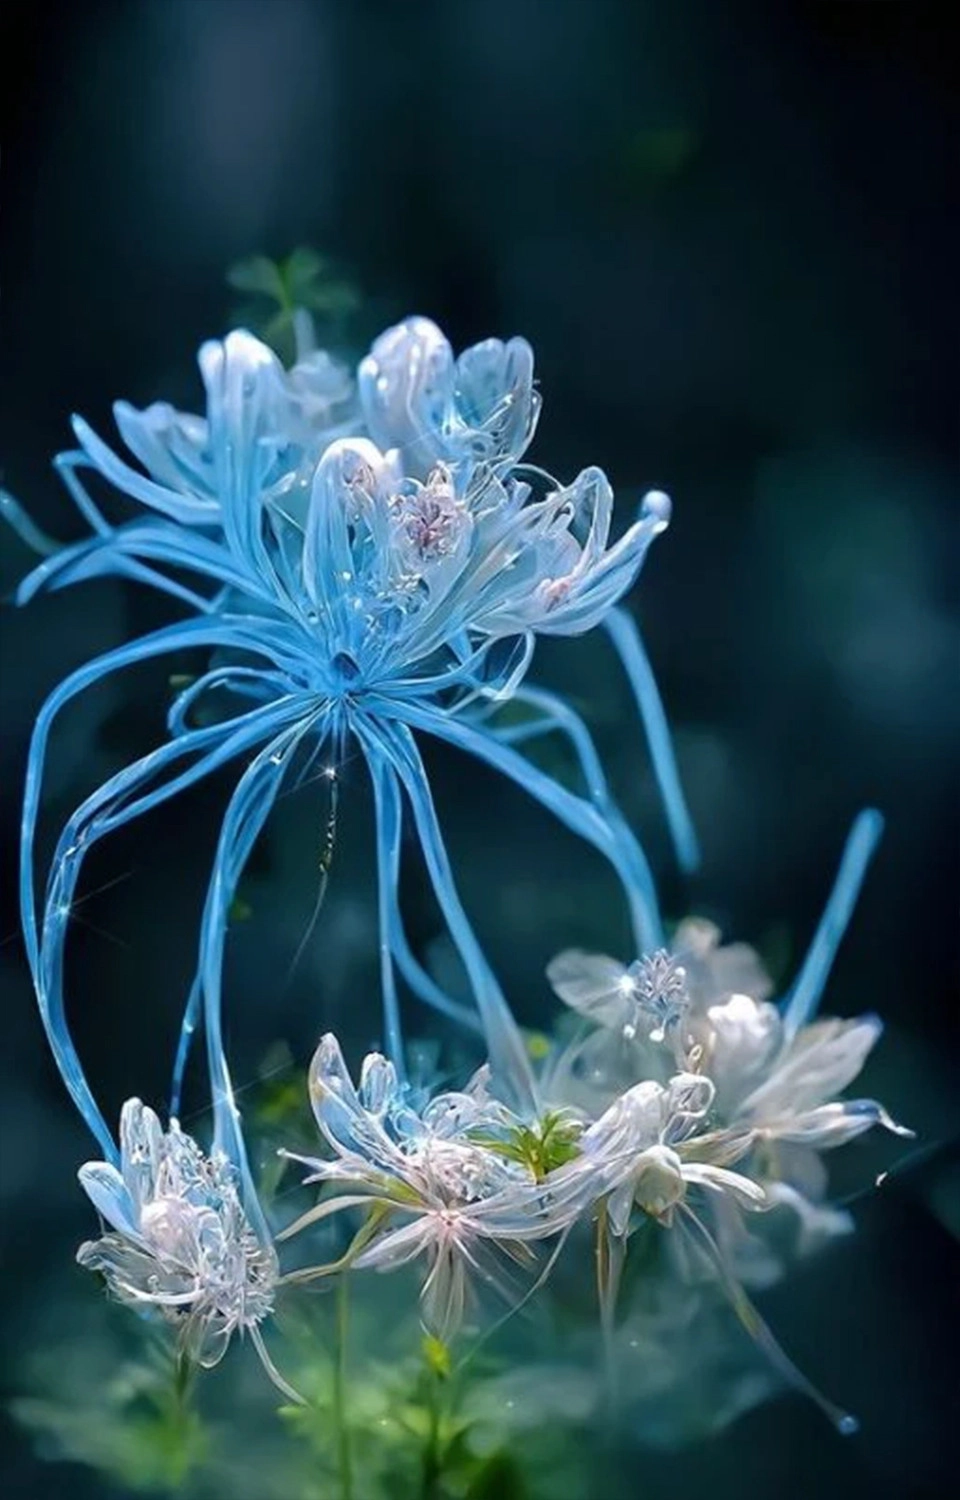  Hình ảnh nền hoa bỉ ngạn xanh rớt 3 chiều ảo diệu